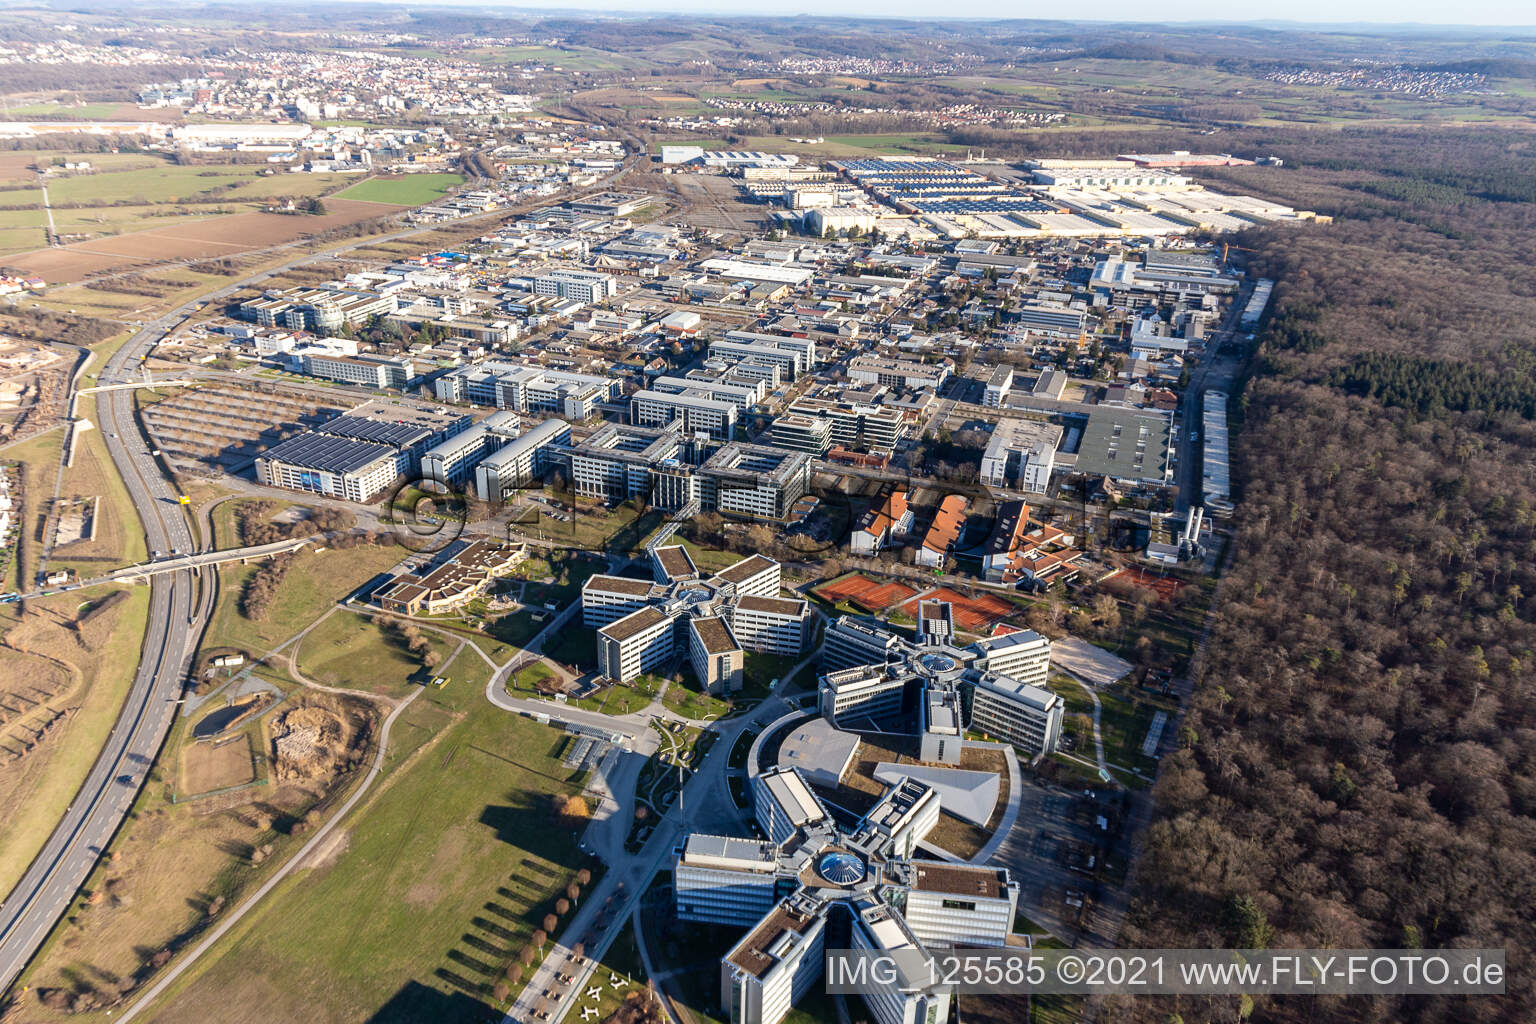 Immeubles de bureaux et commerciaux en forme d'étoile de SAP Deutschland SE & Co. KG en lisière de forêt à Walldorf dans le département Bade-Wurtemberg, Allemagne vue du ciel